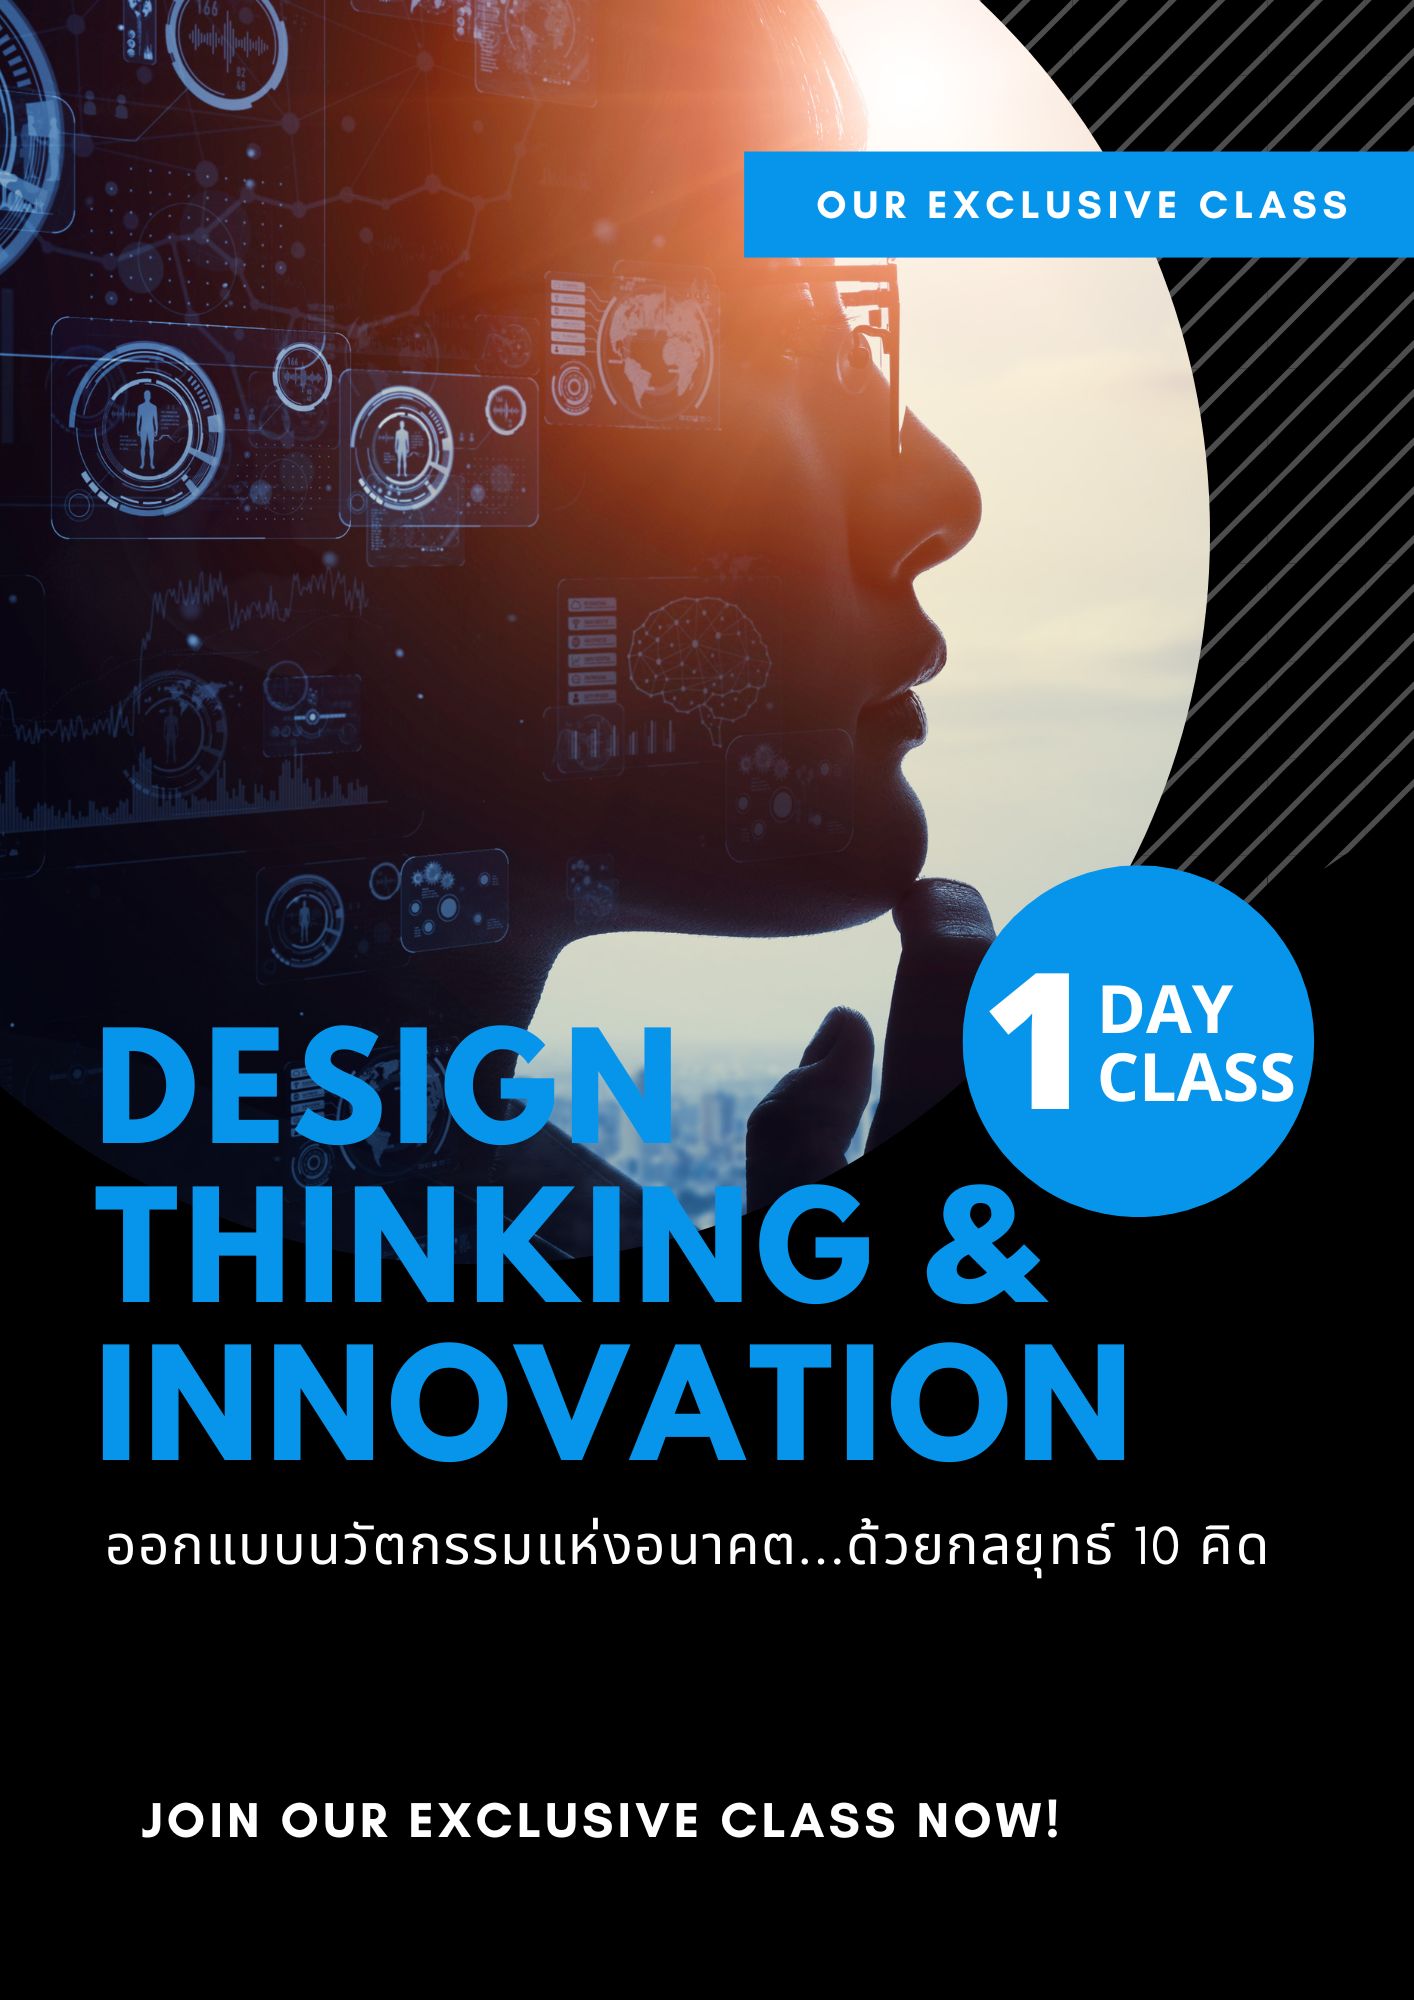 ออกแบบนวัตกรรมแห่งอนาคต...ด้วยกลยุทธ์ 10 คิด  (Design thinking & Innovation)